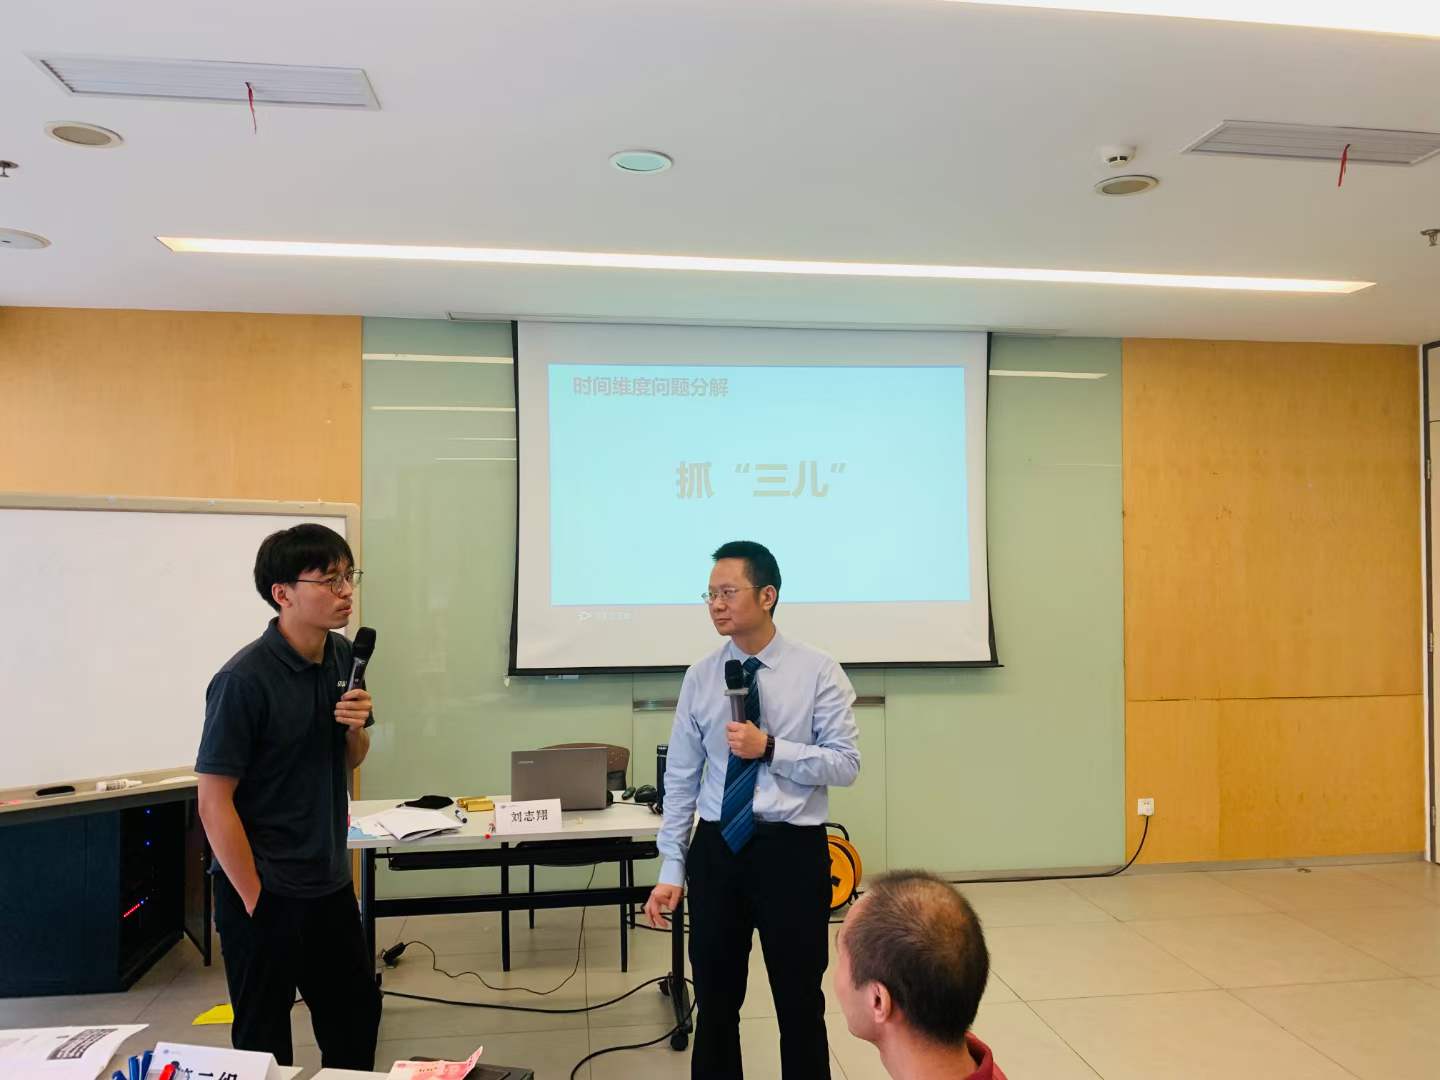 7月3日刘志翔老师给某电器公司授课《问题分析与解决》顺利结束，完美交付！！！